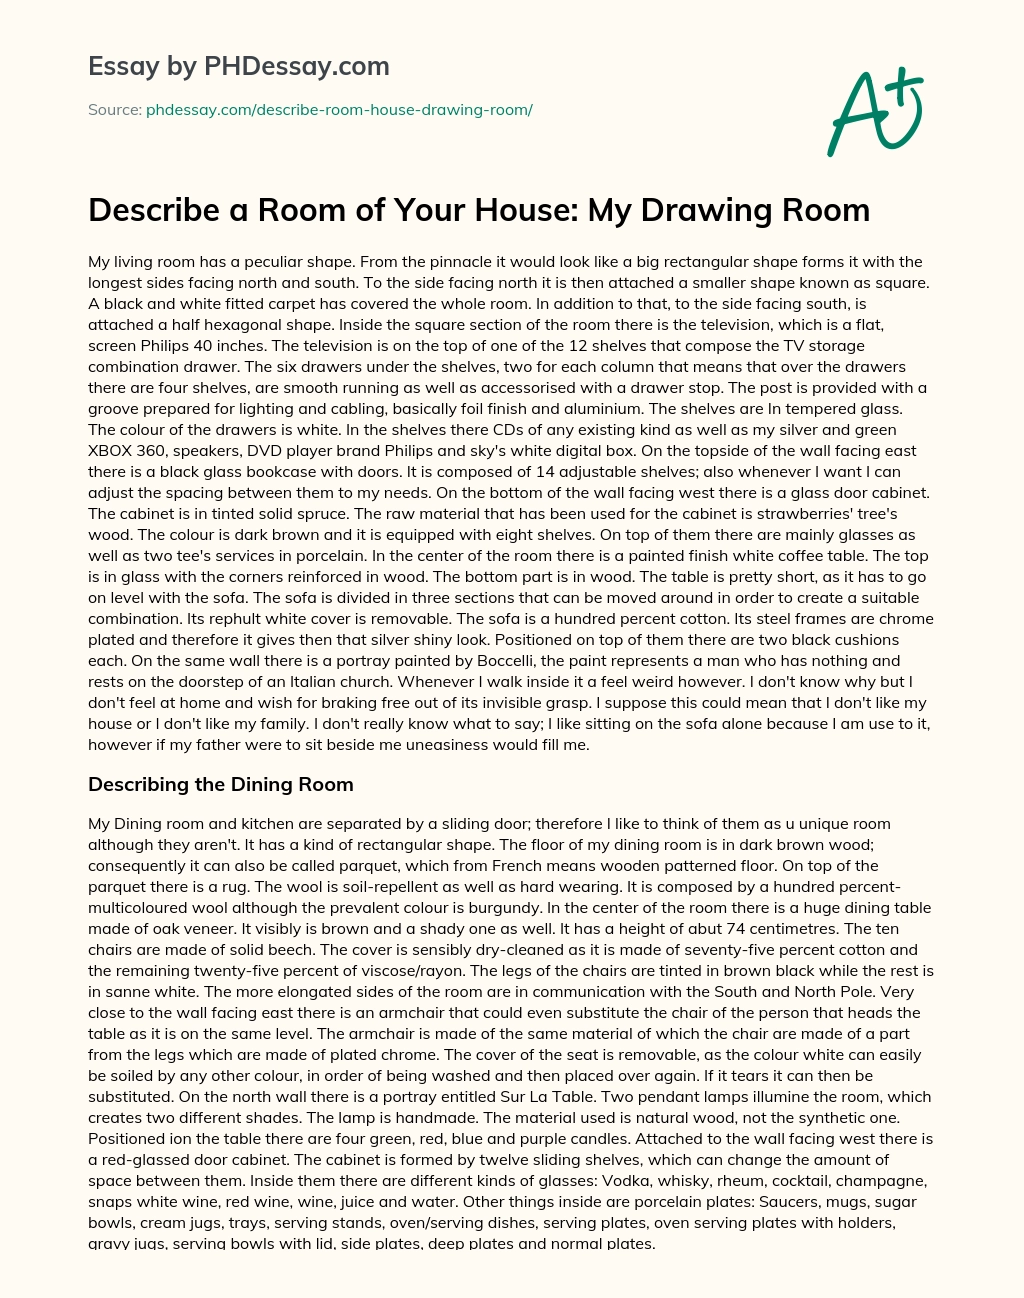 descriptive paragraph about a room